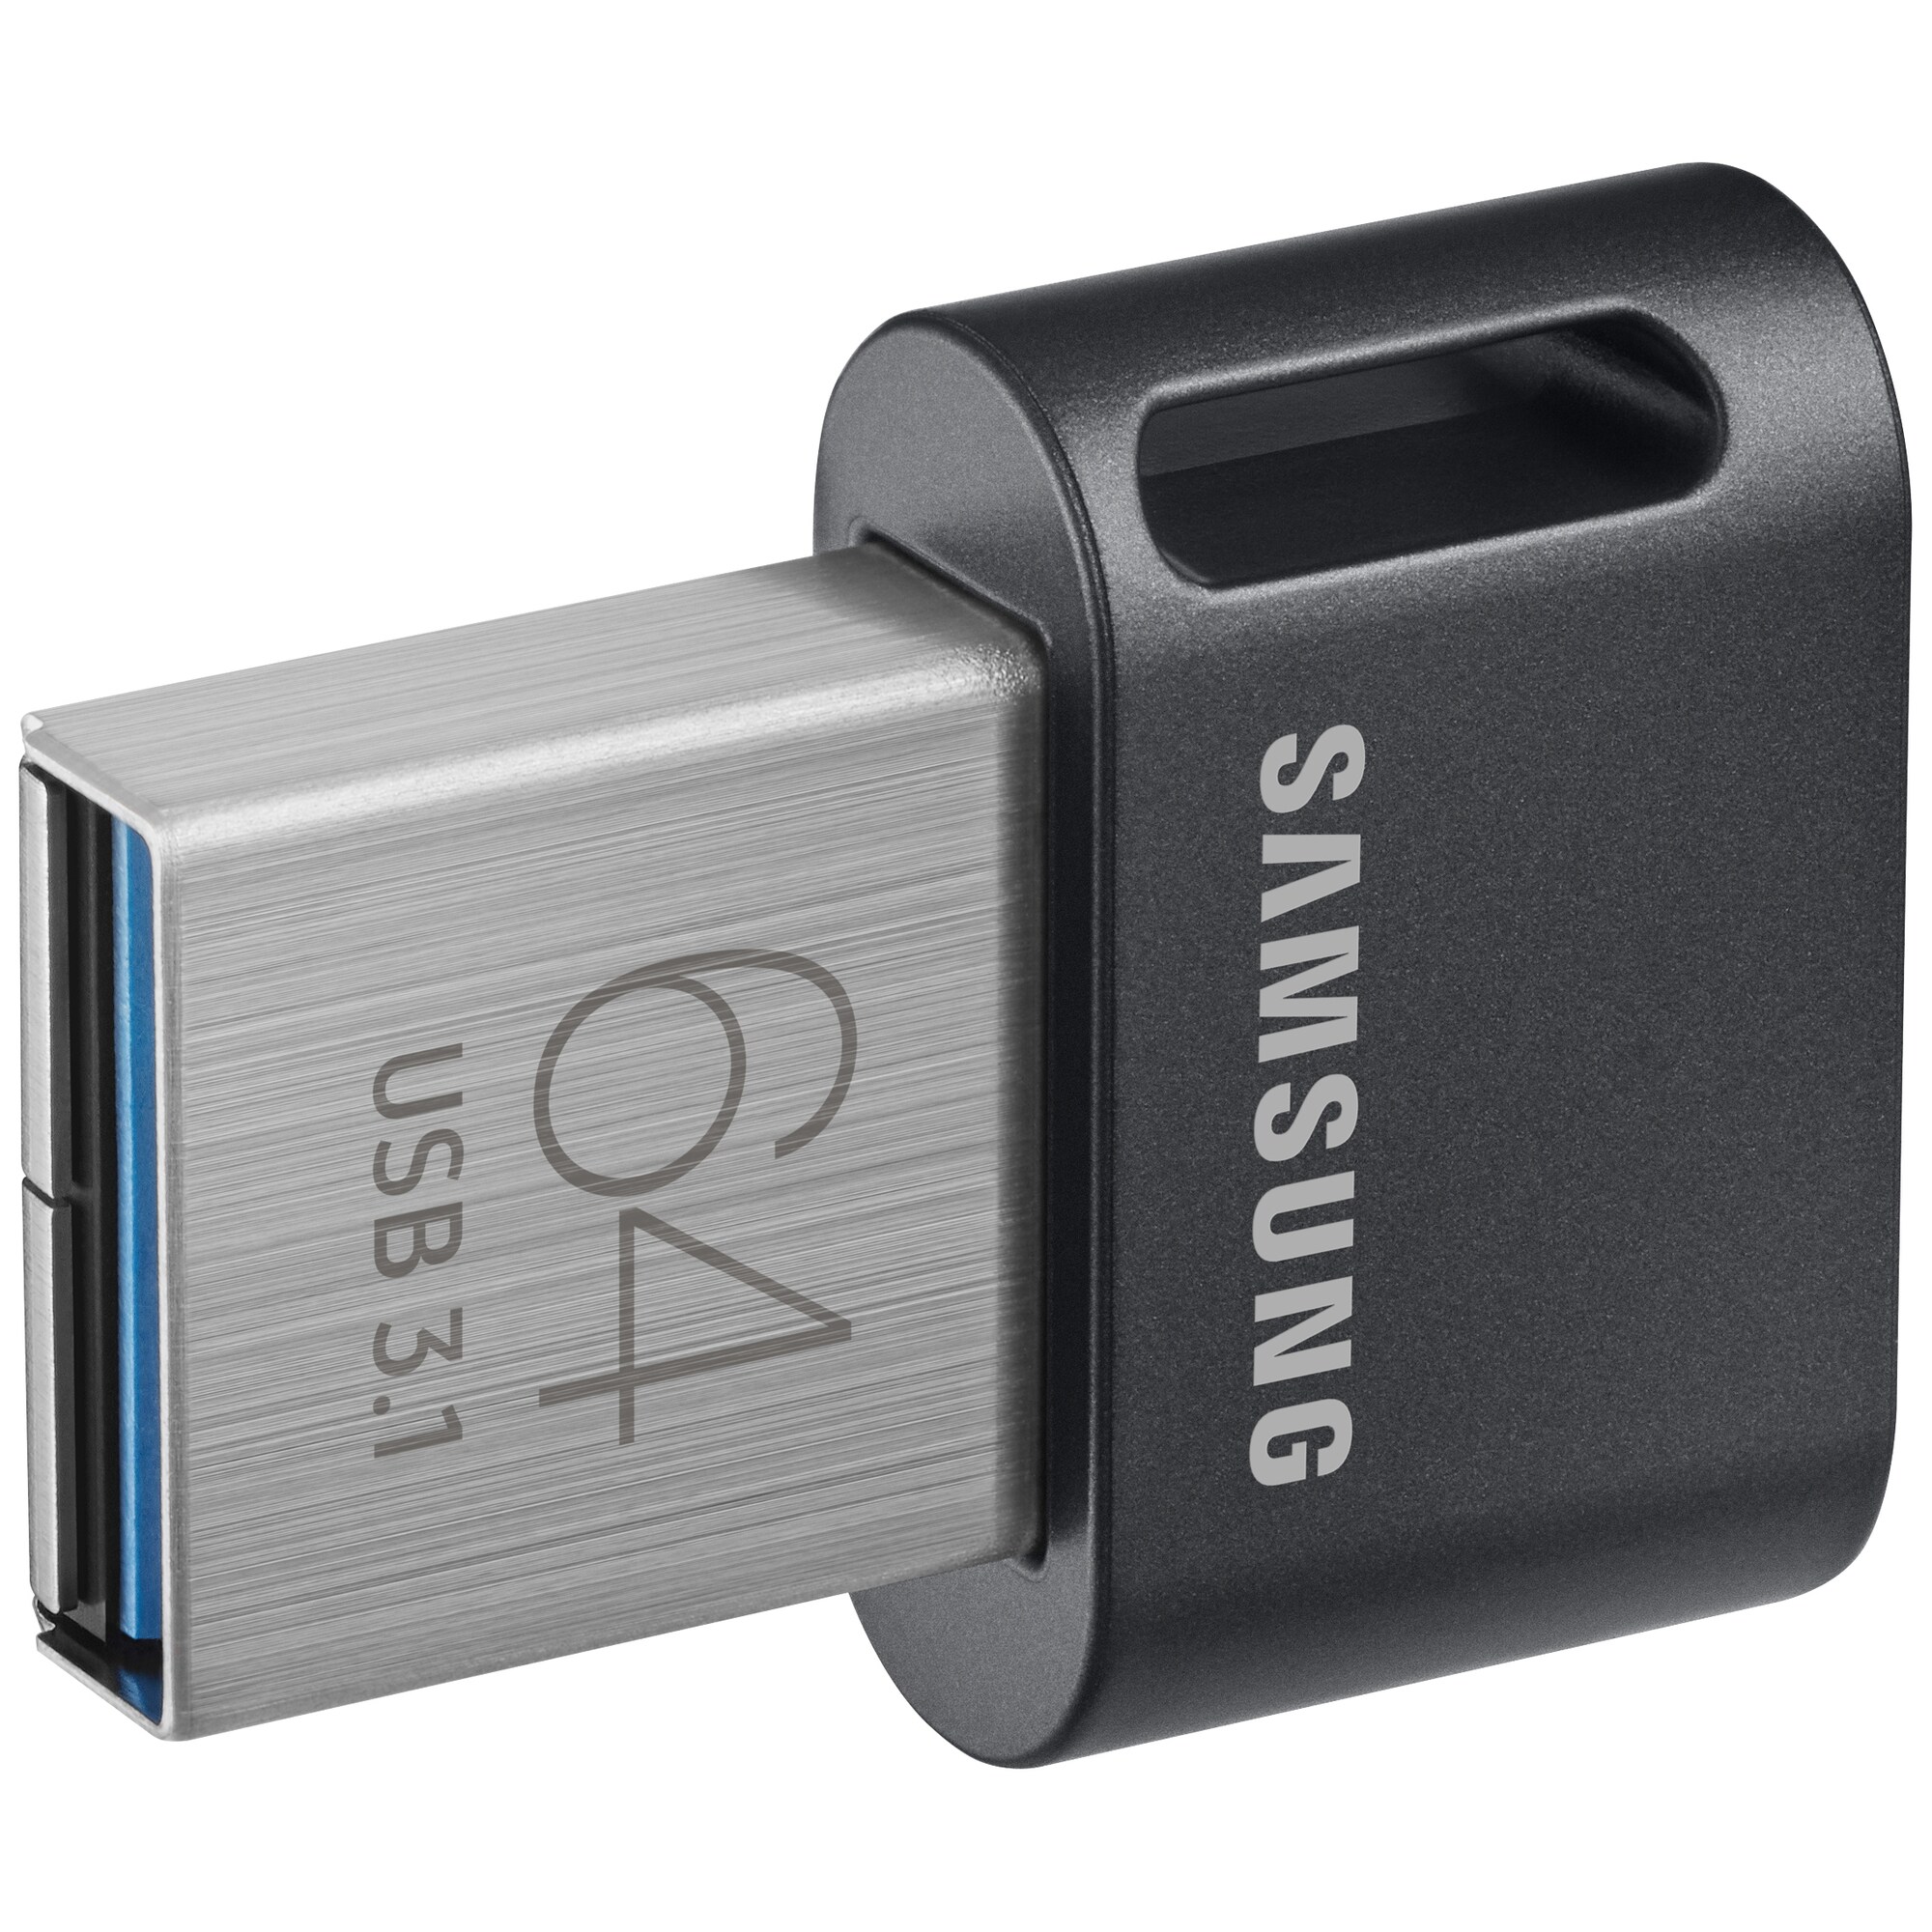 Samsung Fit Plus USB 3.1 minnepenn 64 GB - Elkjøp